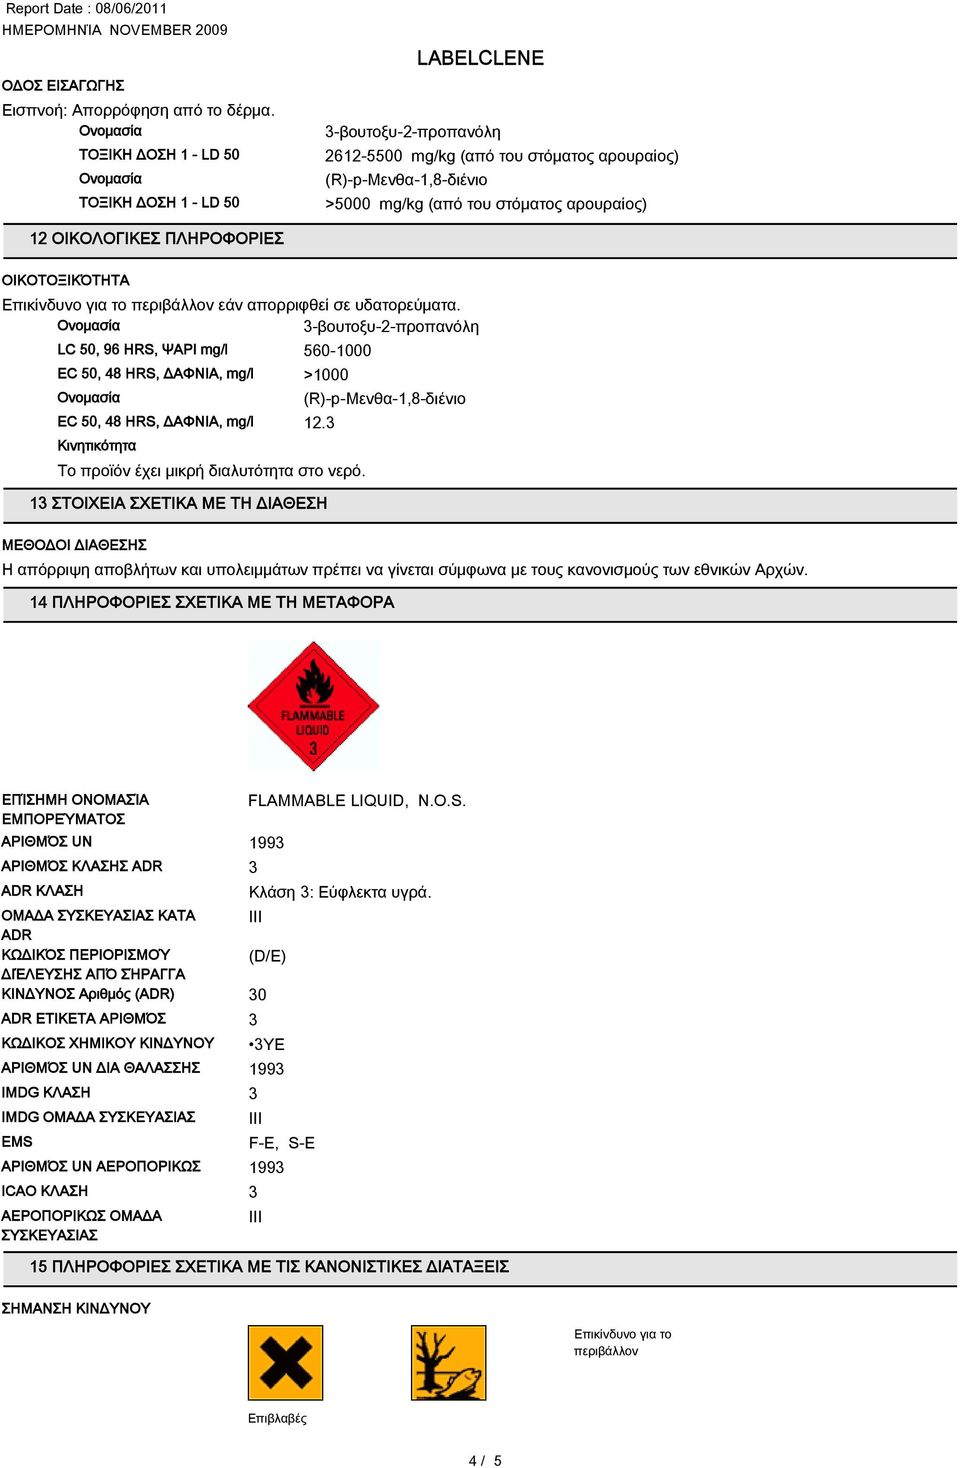 Επικίνδυνο για το περιβάλλον εάν απορριφθεί σε υδατορεύματα. -βουτοξυ-2-προπανόλη LC 50, 96 HRS, ΨΑΡΙ mg/l 560-1000 EC 50, 48 HRS, ΔΑΦΝΙΑ, mg/l >1000 EC 50, 48 HRS, ΔΑΦΝΙΑ, mg/l 12.